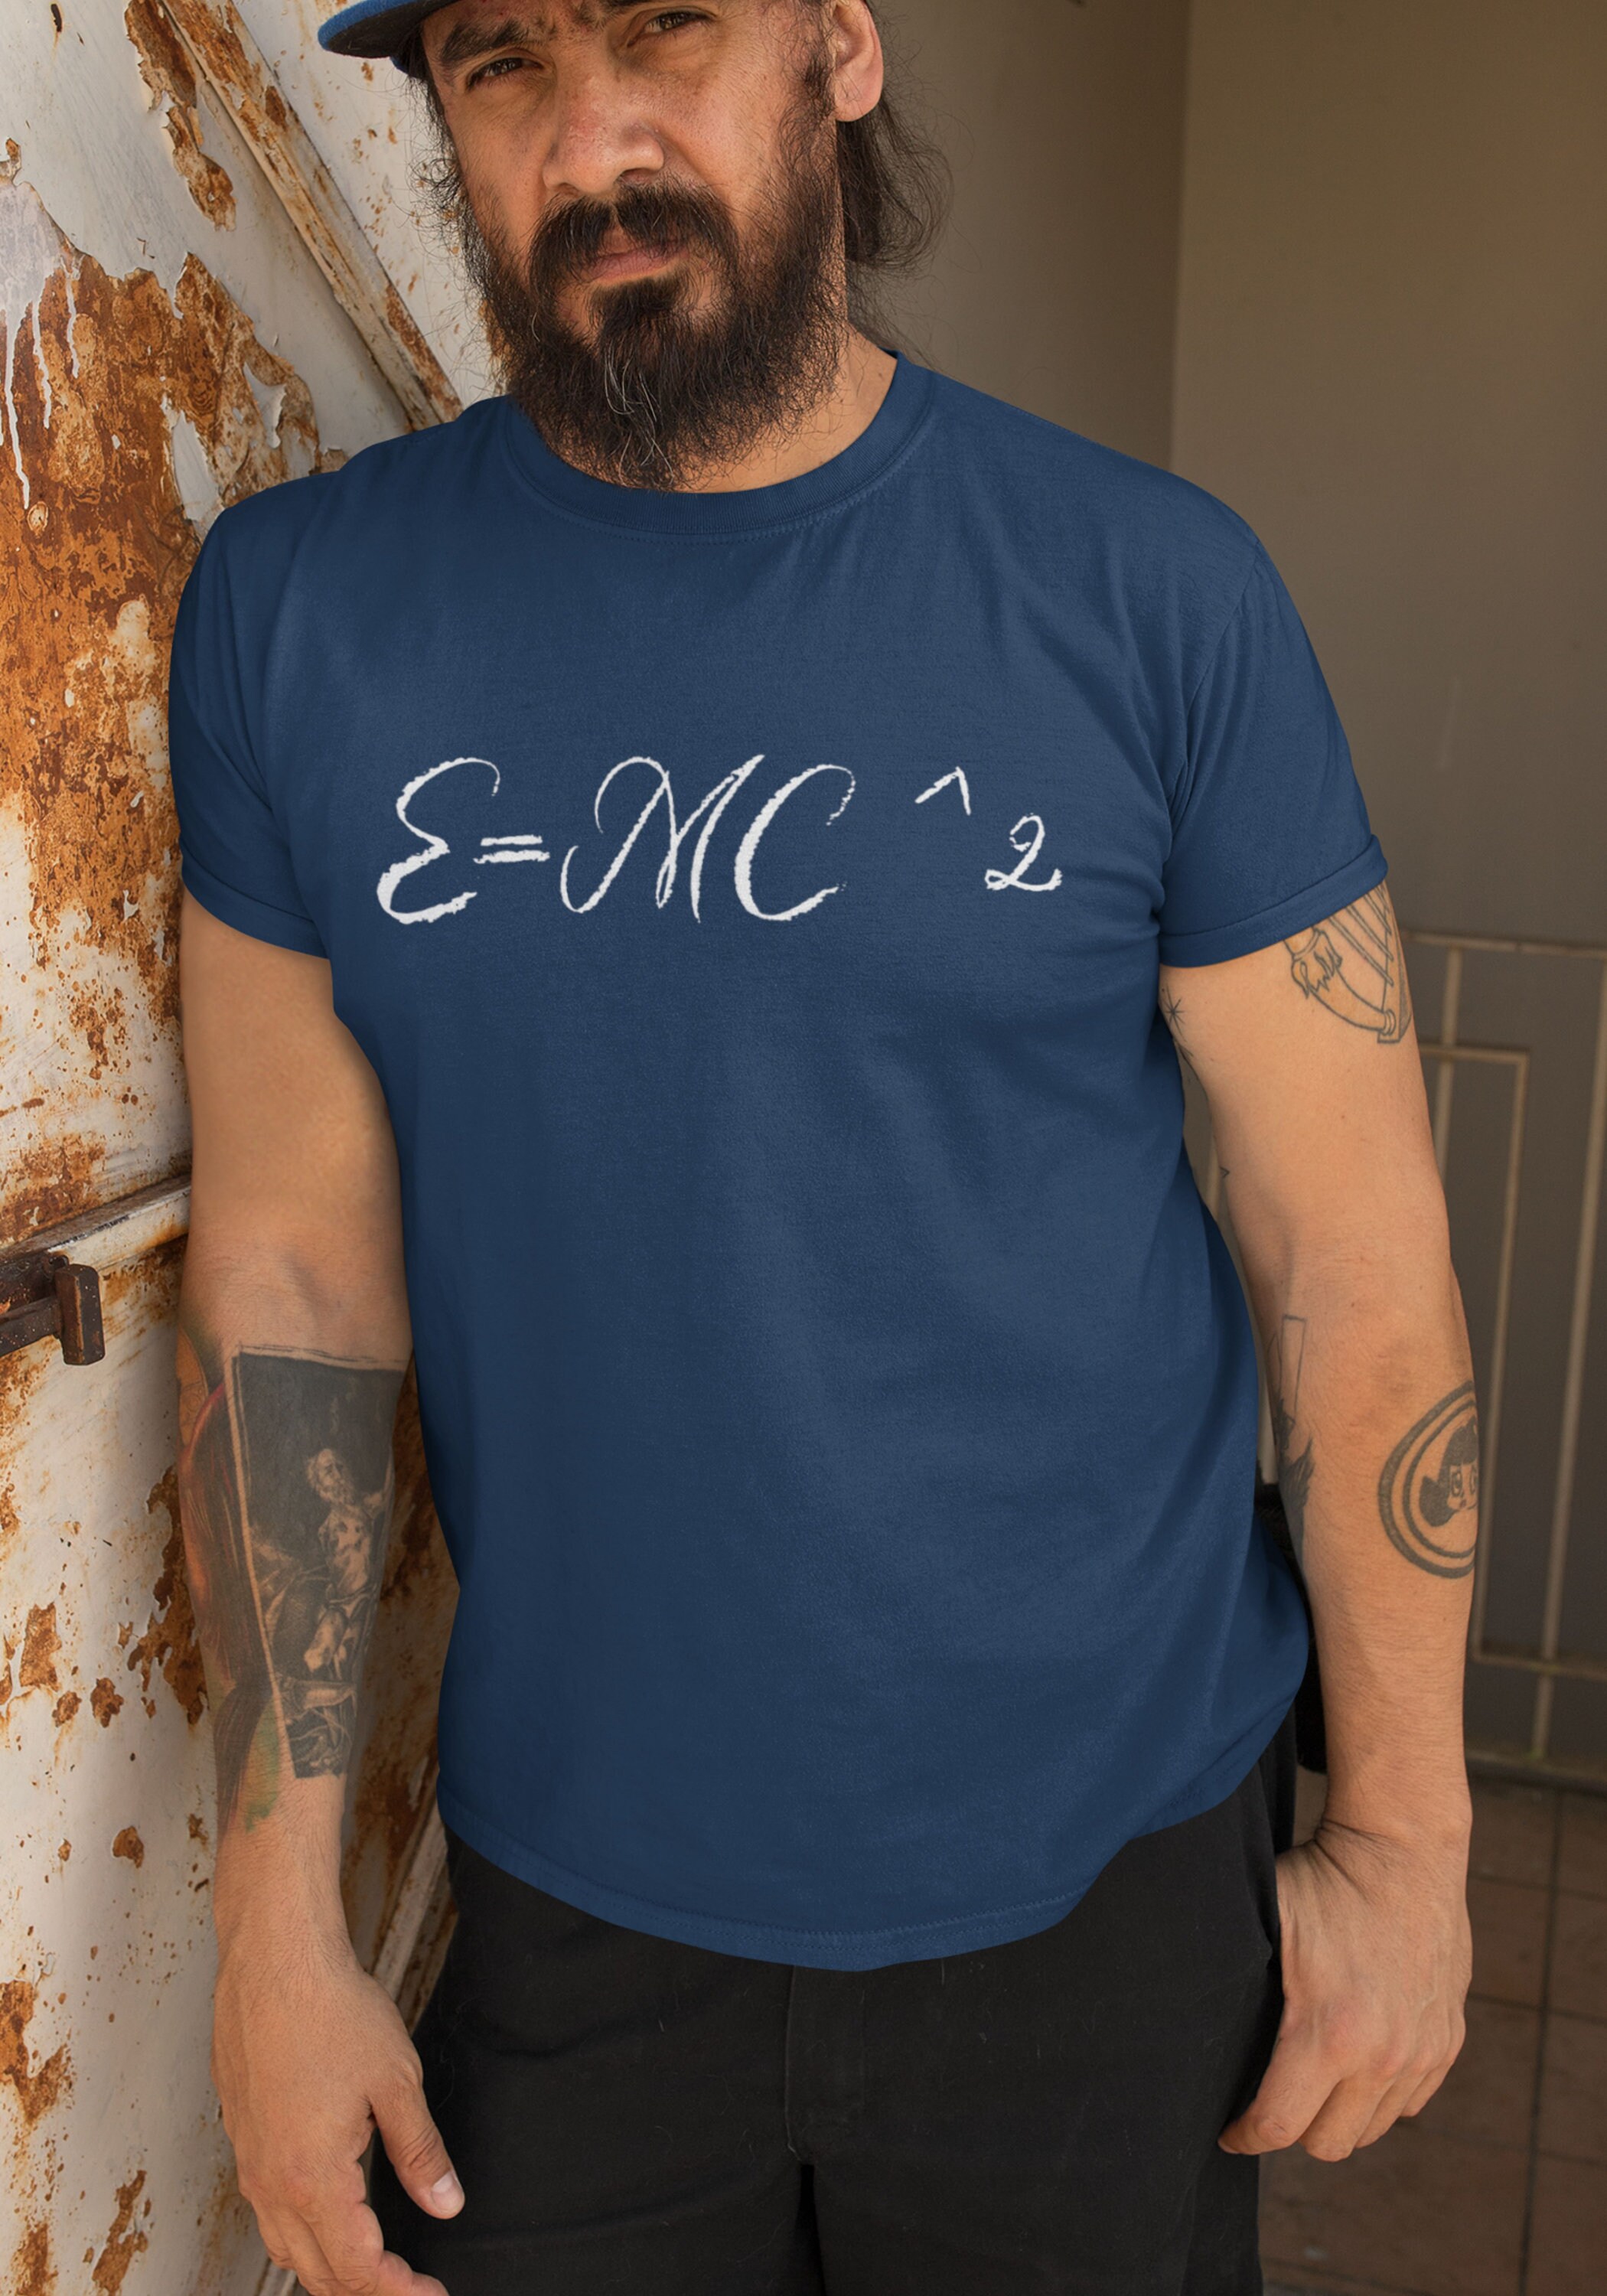 E=mc Wallpapers - Wallpaper Cave